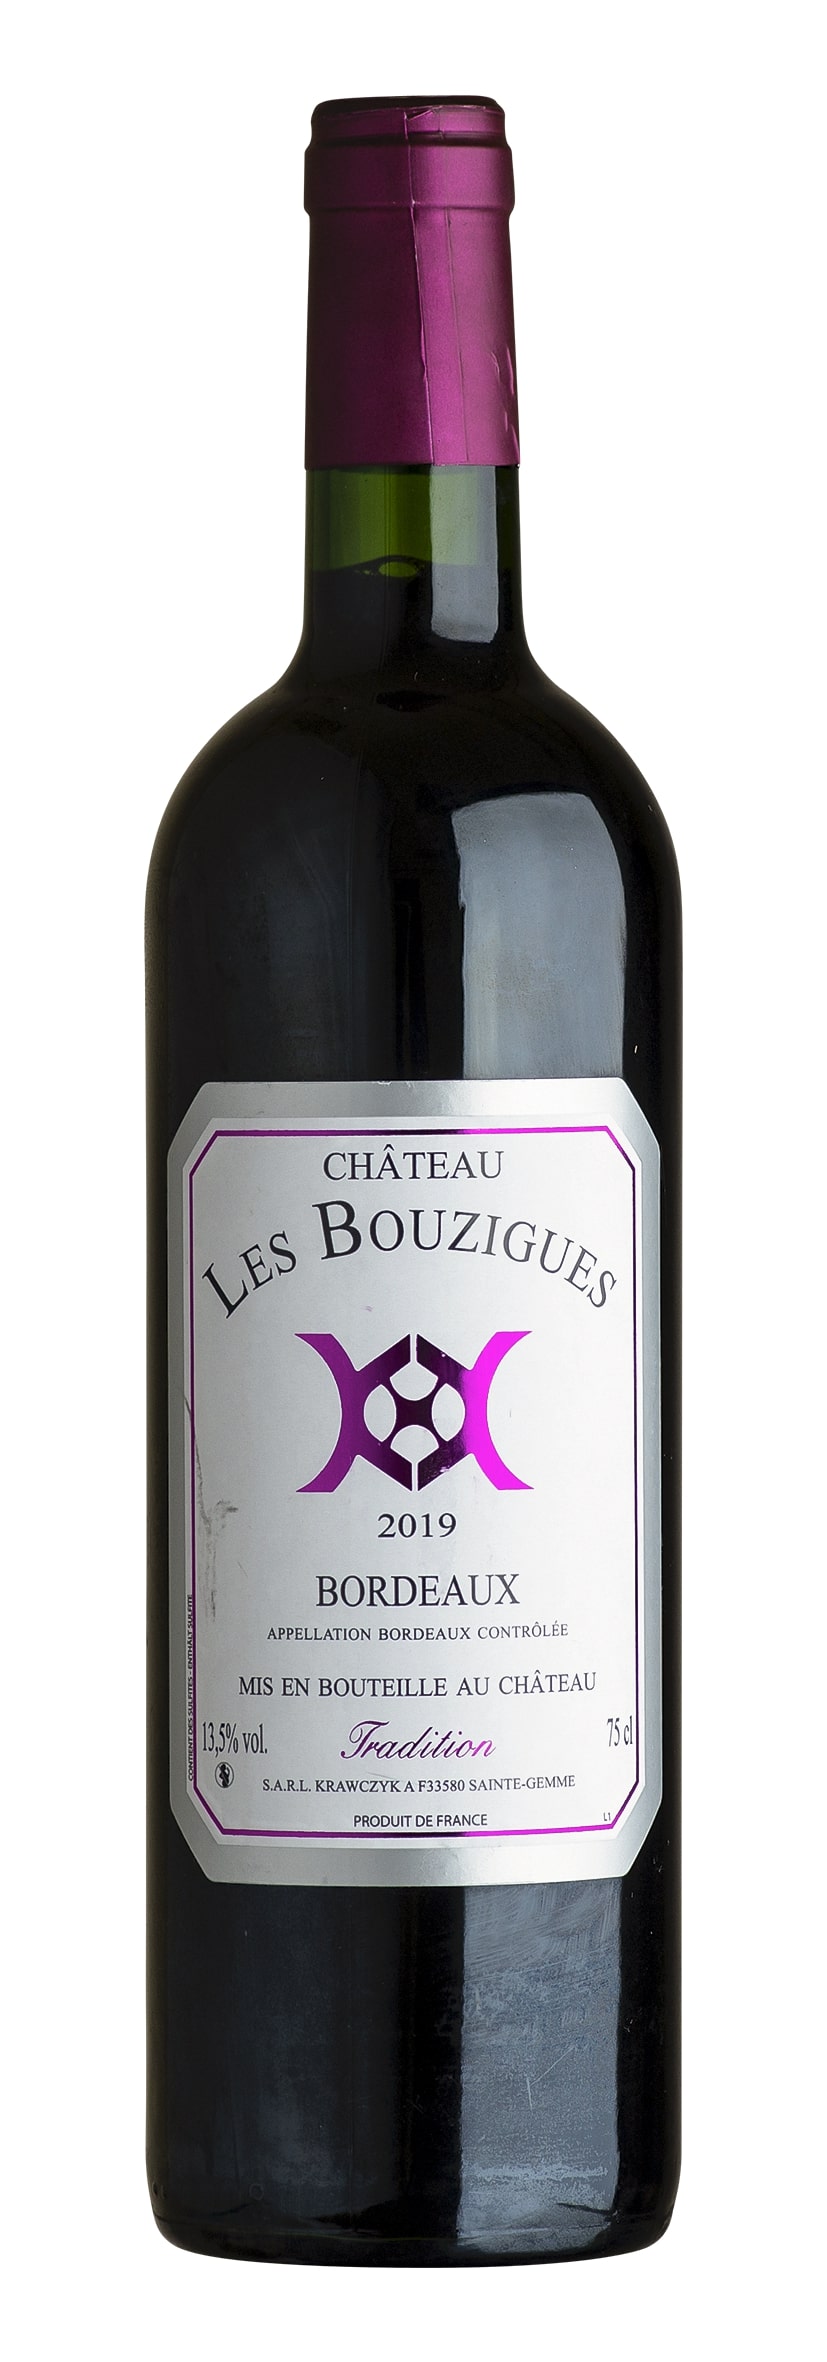 Bordeaux rouge AOC "Tradition" 2019